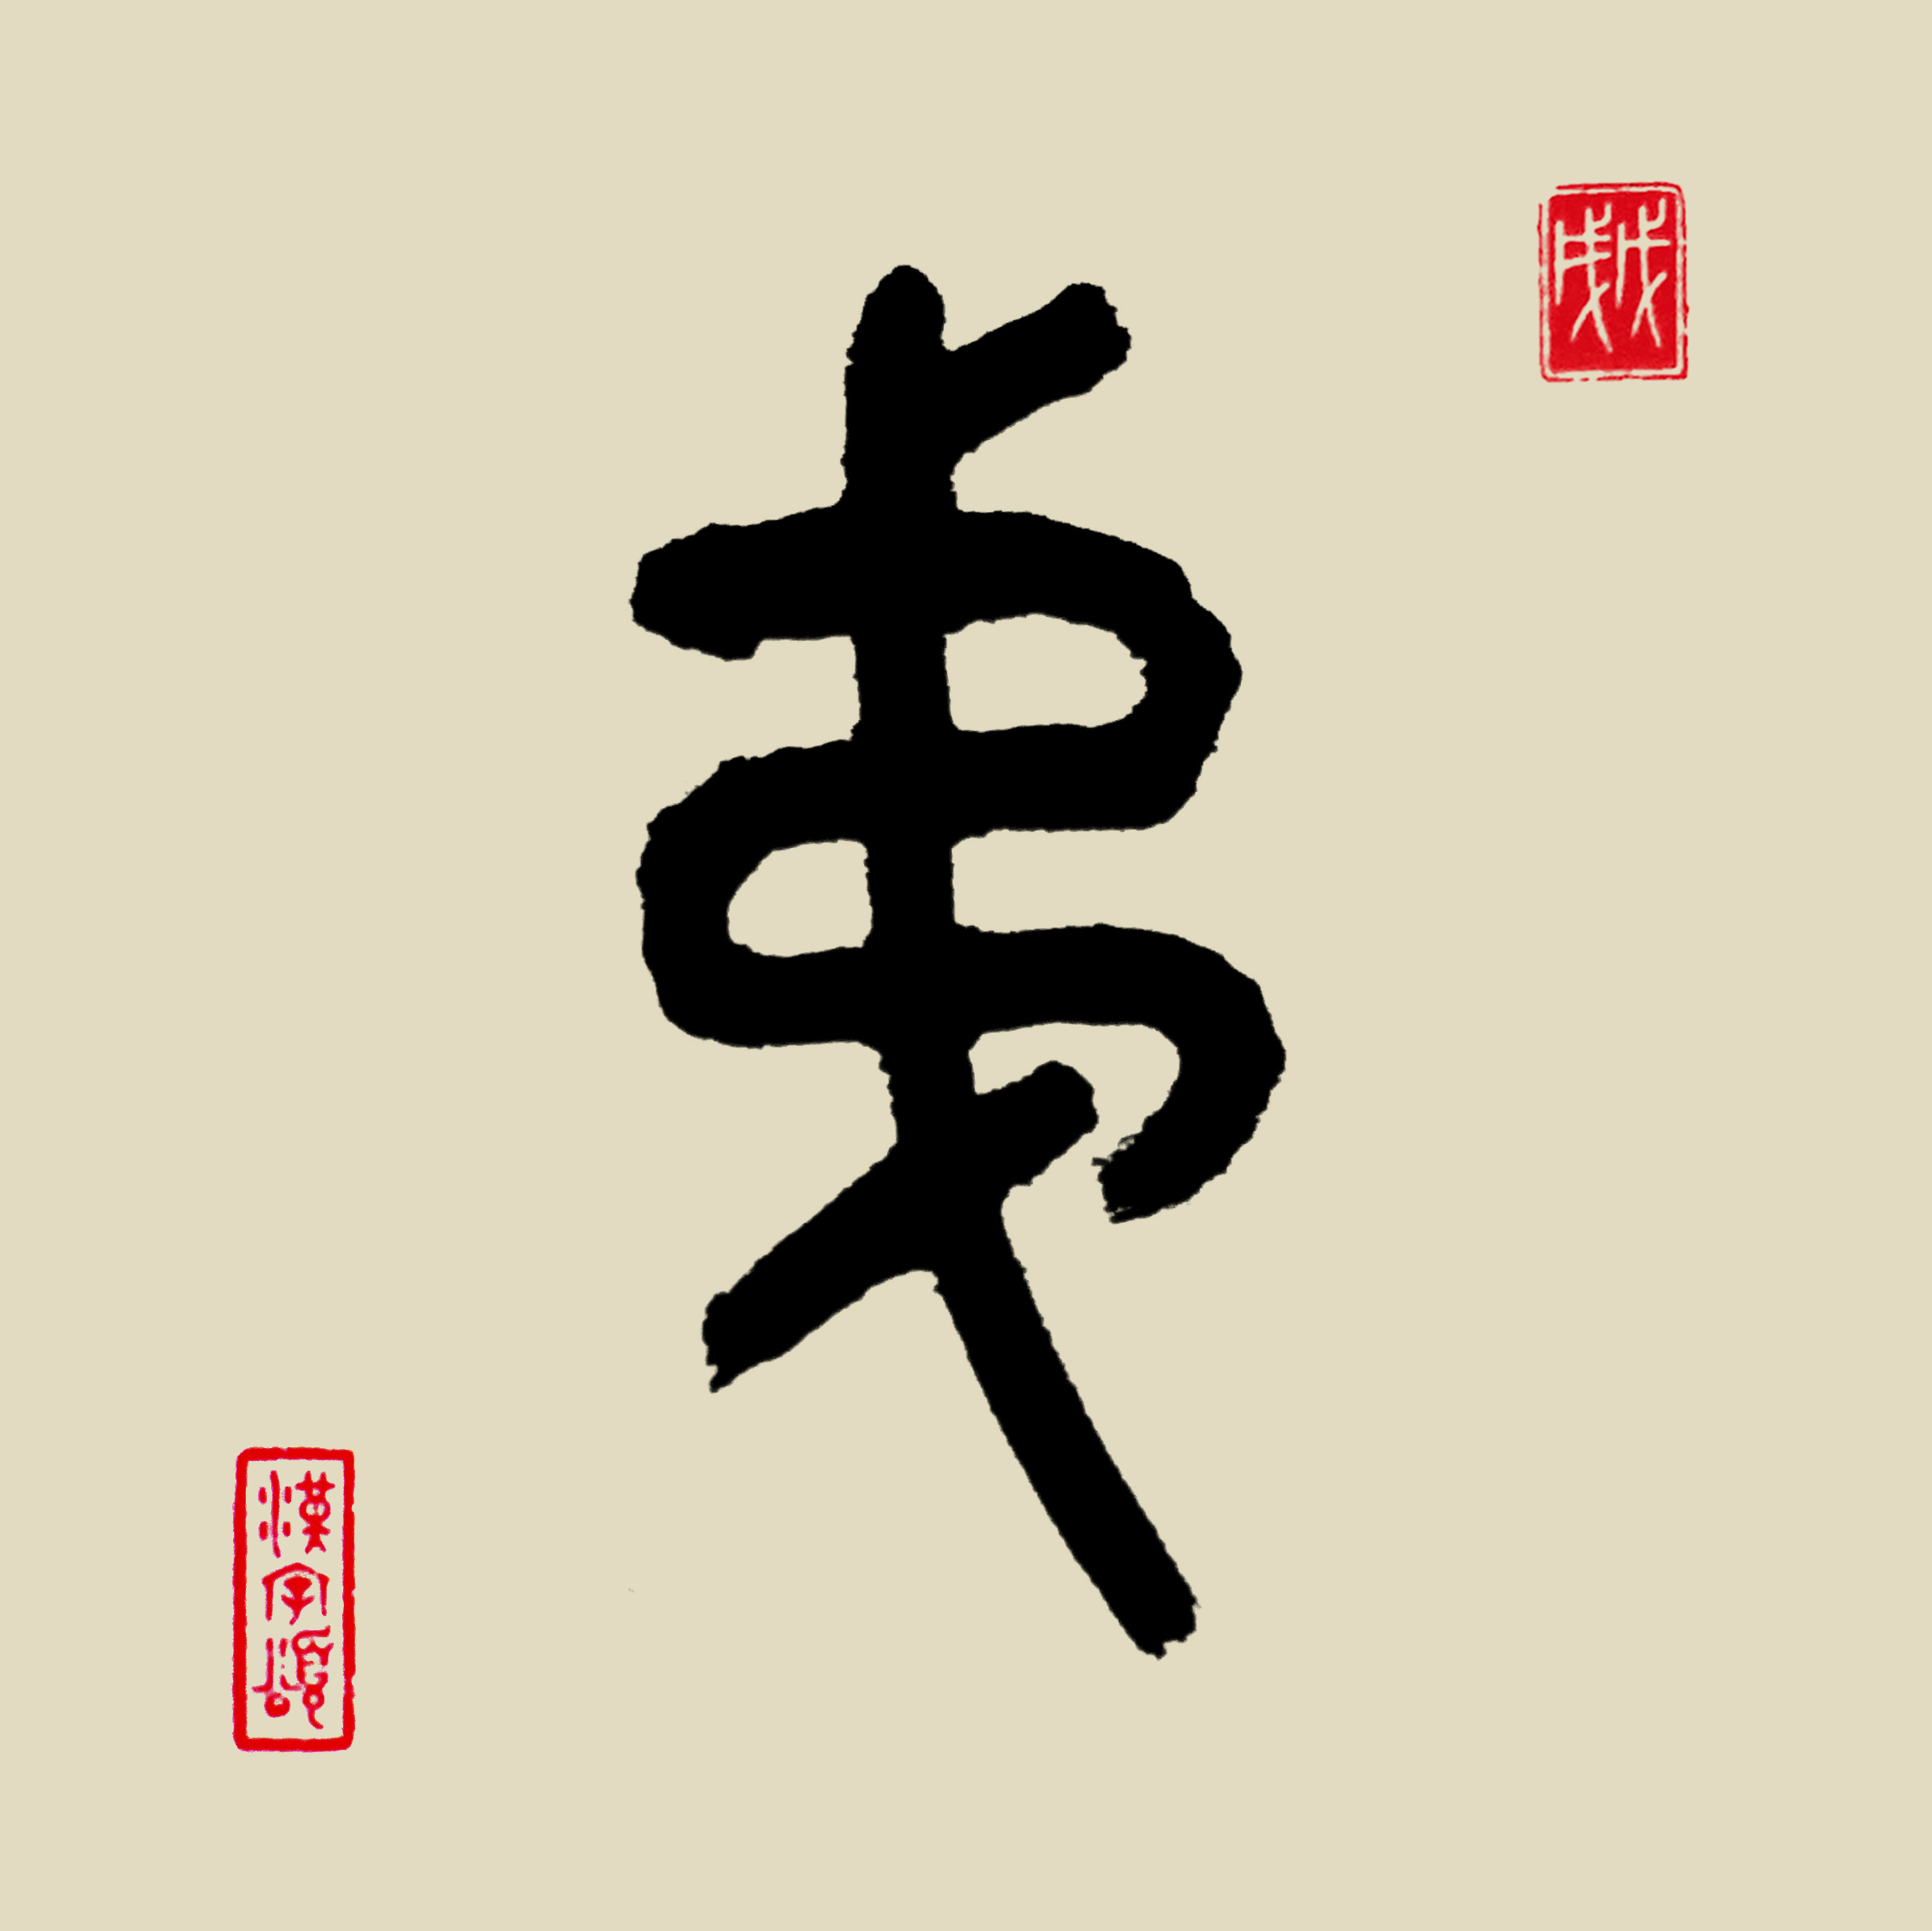 甲骨文字形,象绳索围绕于"弋(yì 象竖立有杈的短木桩)".